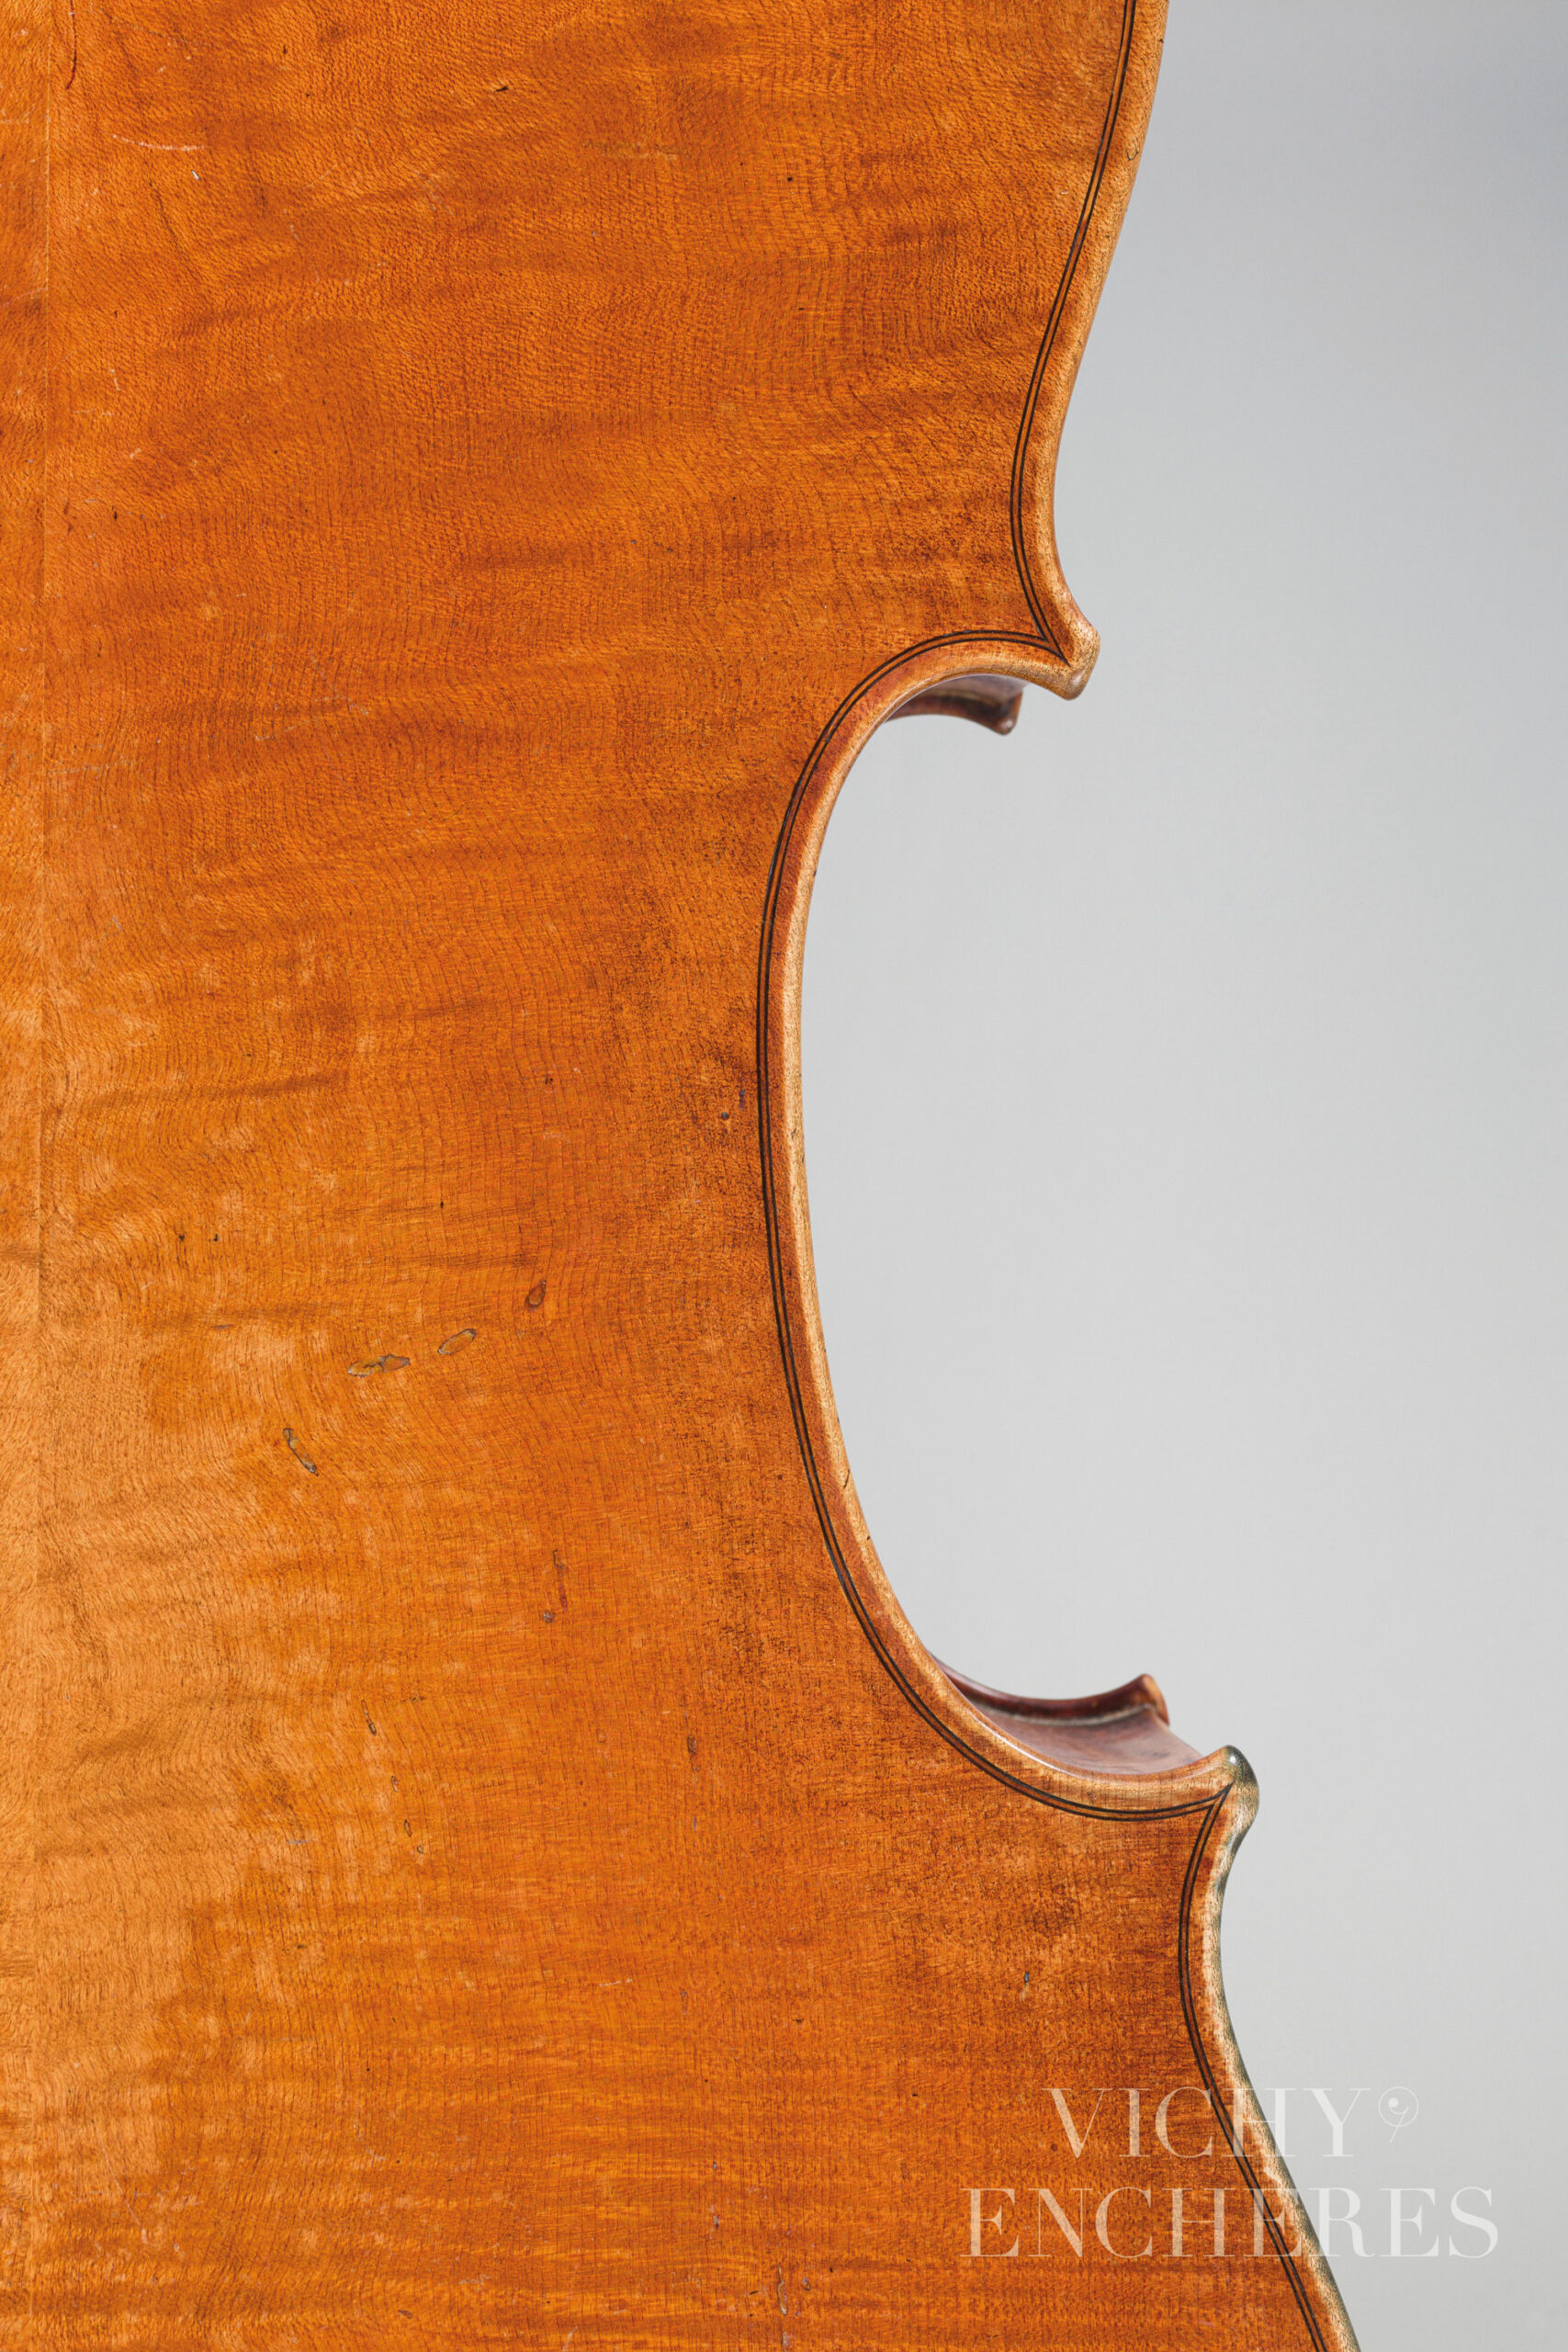 Violoncelle de Jean-Baptiste VUILLAUME Ex Jean-Michel Moulin Instrument mis en vente par Vichy Enchères le 1er décembre 2022 © Christophe Darbelet